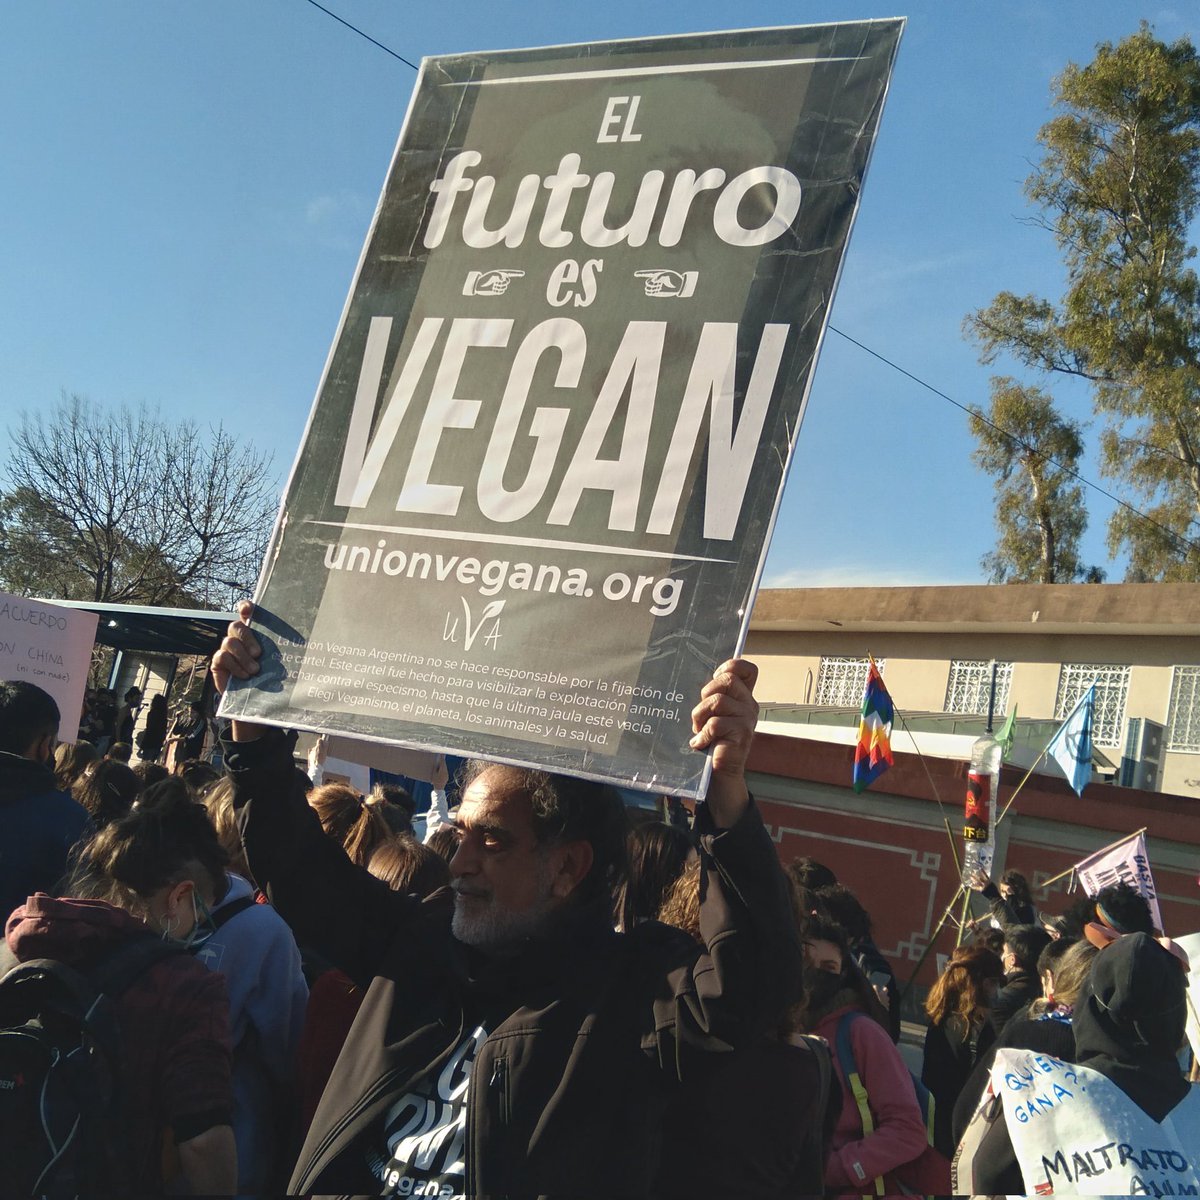 El futuro es vegano

*Foto del #25A frente a la Embajada de China en la concentración en contra del acuerdo porcino.  

#elfuturoesvegano #noalacuerdoporcinoconchina 
#bastadefalsassoluciones